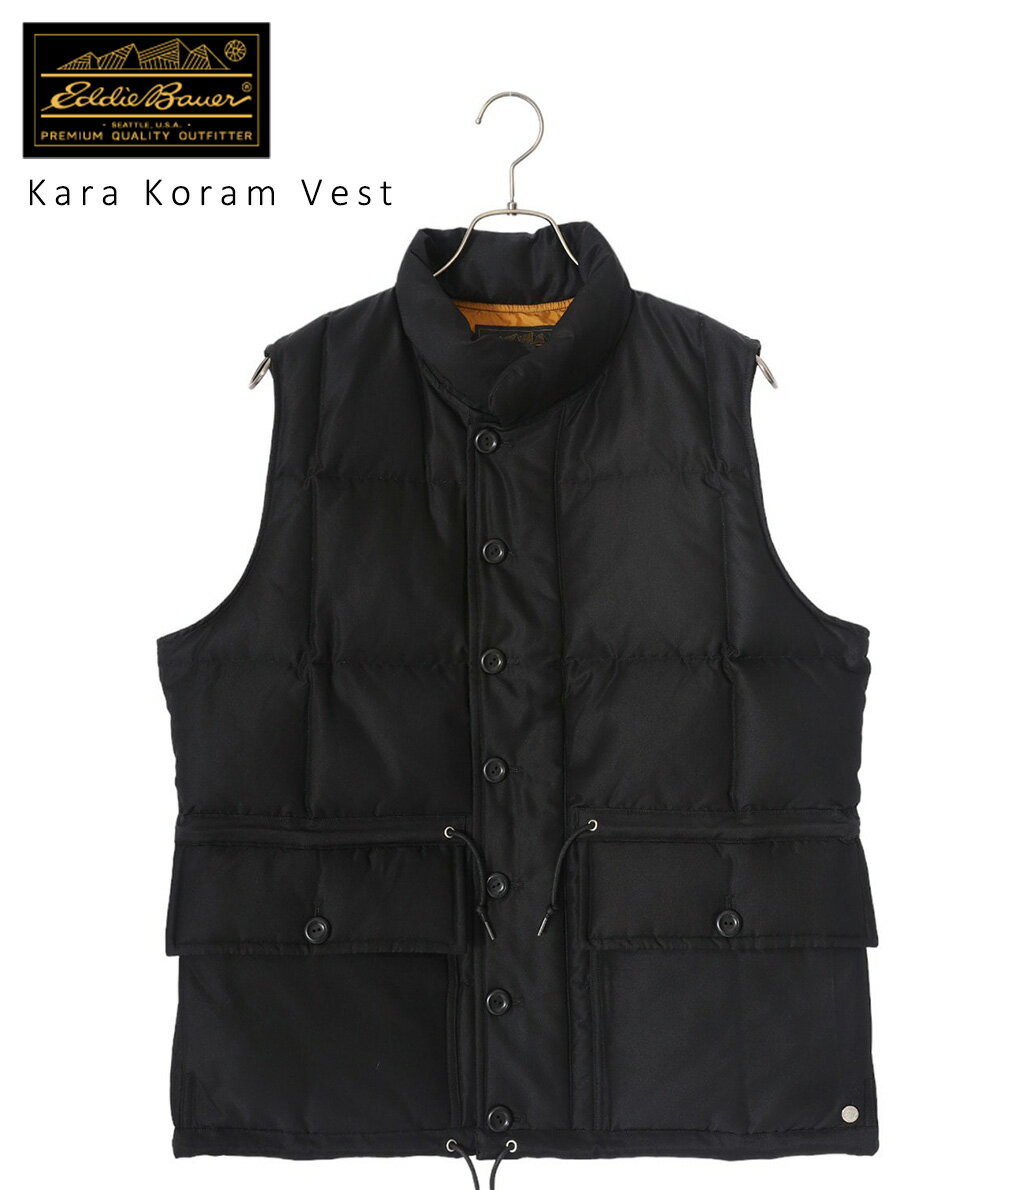 Eddie Bauer Black Tag Collection / エディー・バウアーブラックタグコレクション : 【レディース】Kara Koram Vest / 全2色 : カラコラムベスト ベスト ダウン アメリカン アルパイン クラブ ブラック ベージュ : EB0102-L1004【DEA】